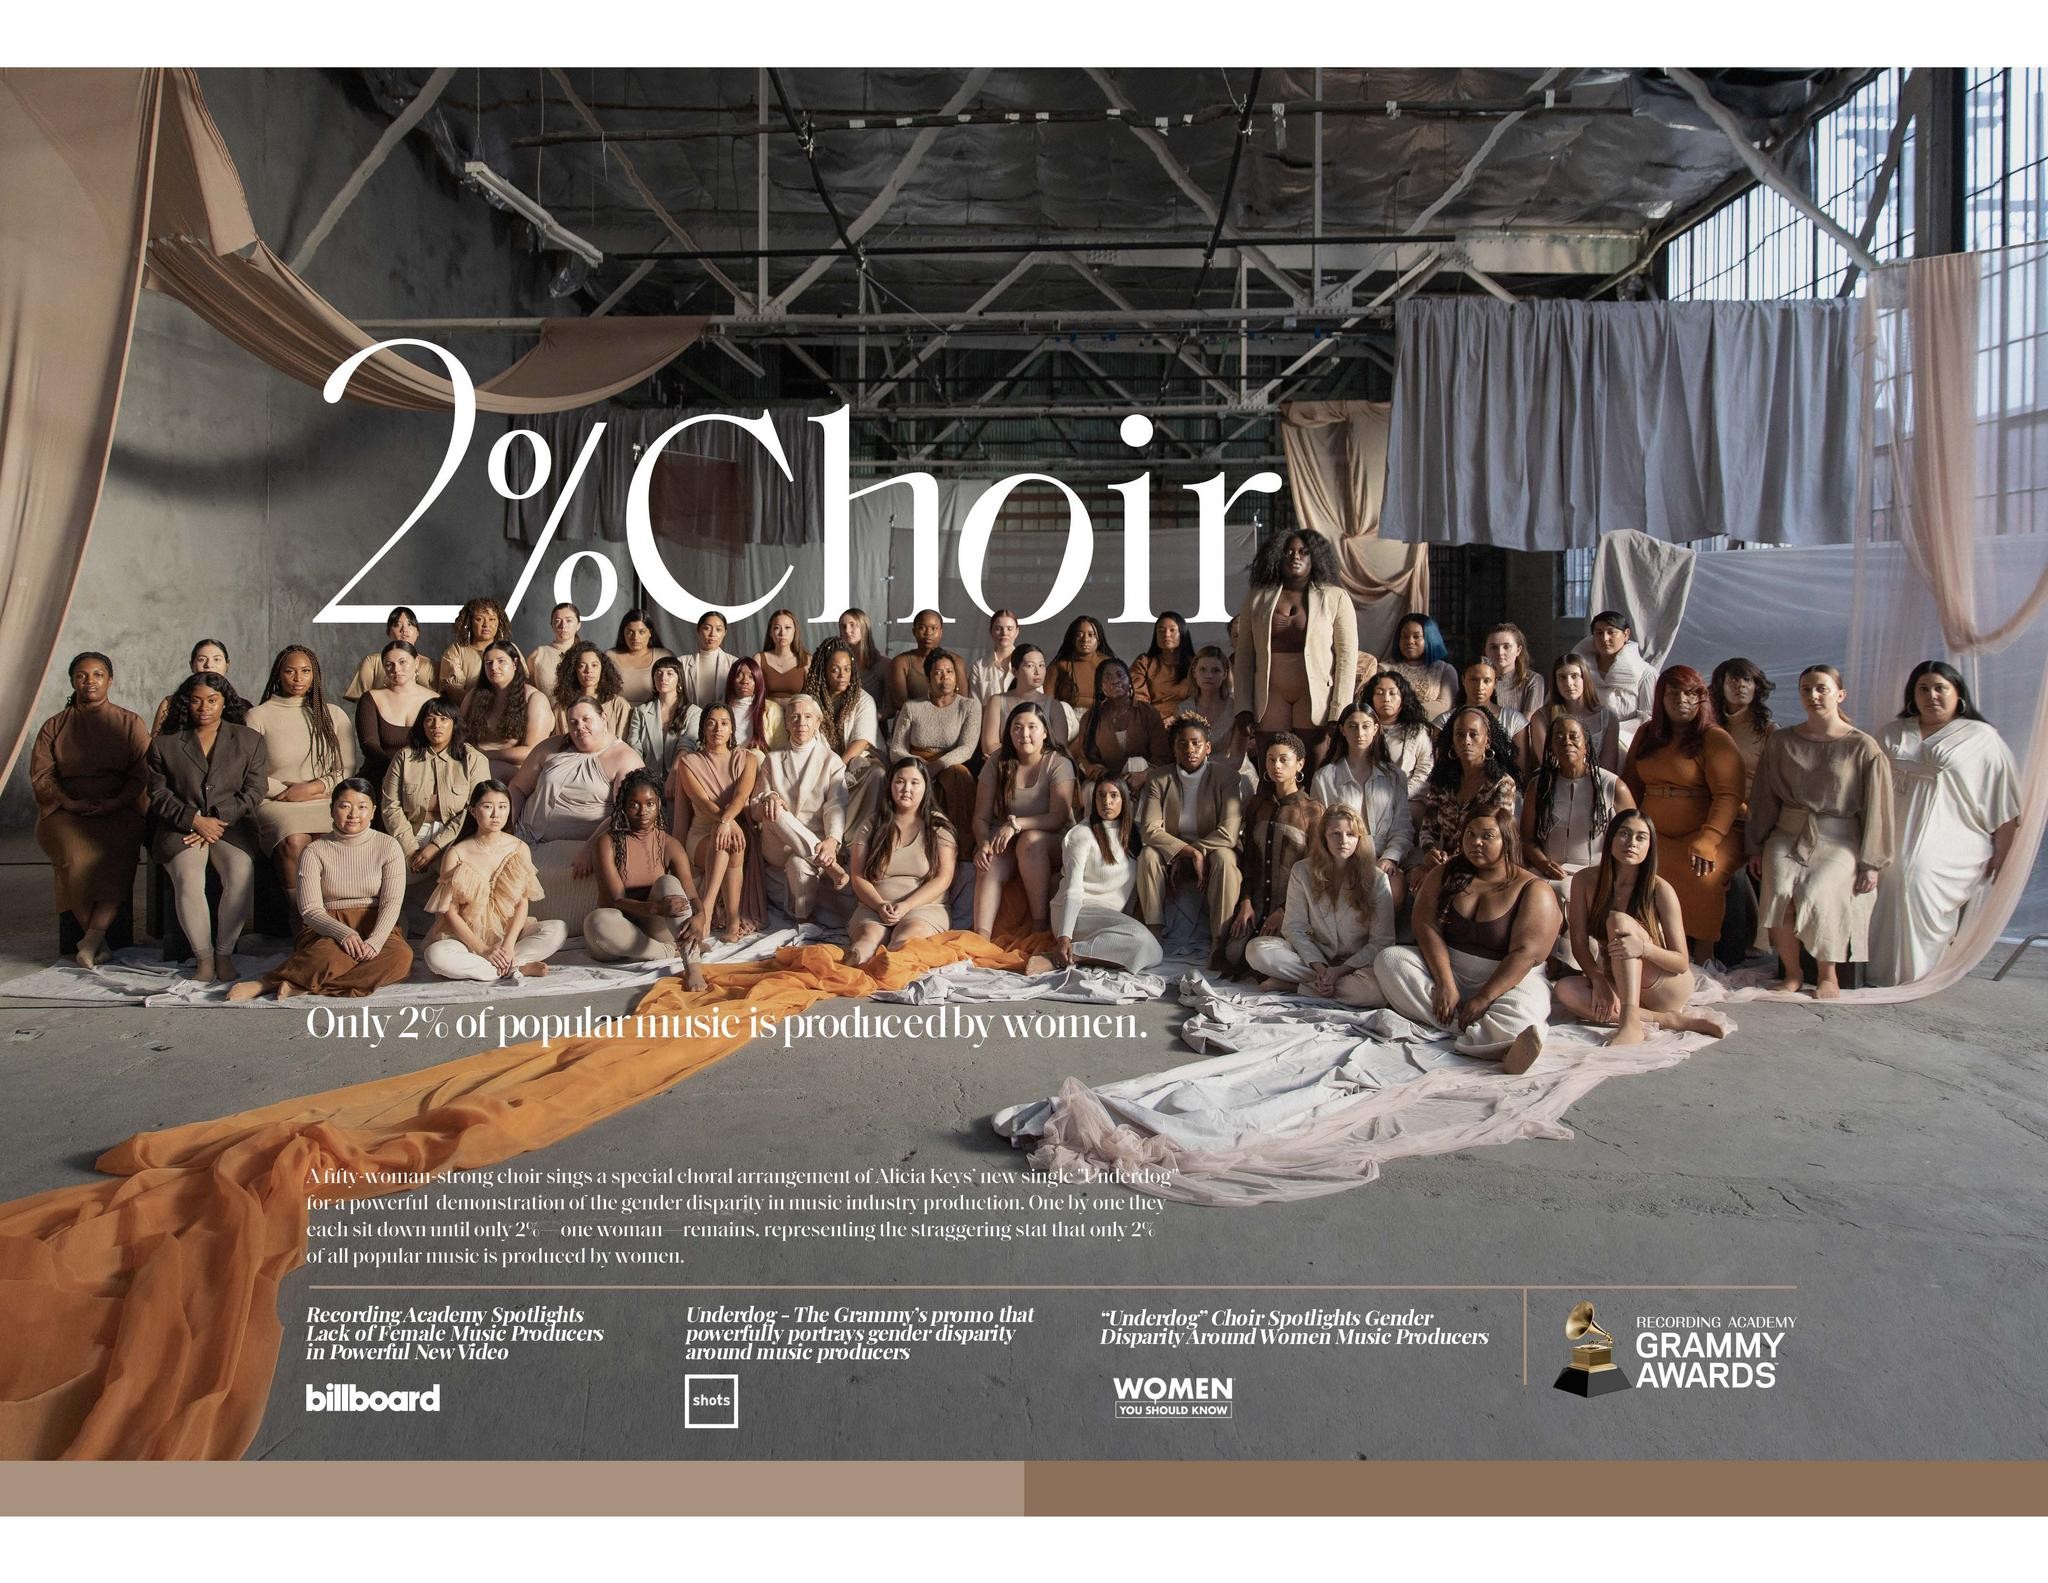 2% Choir